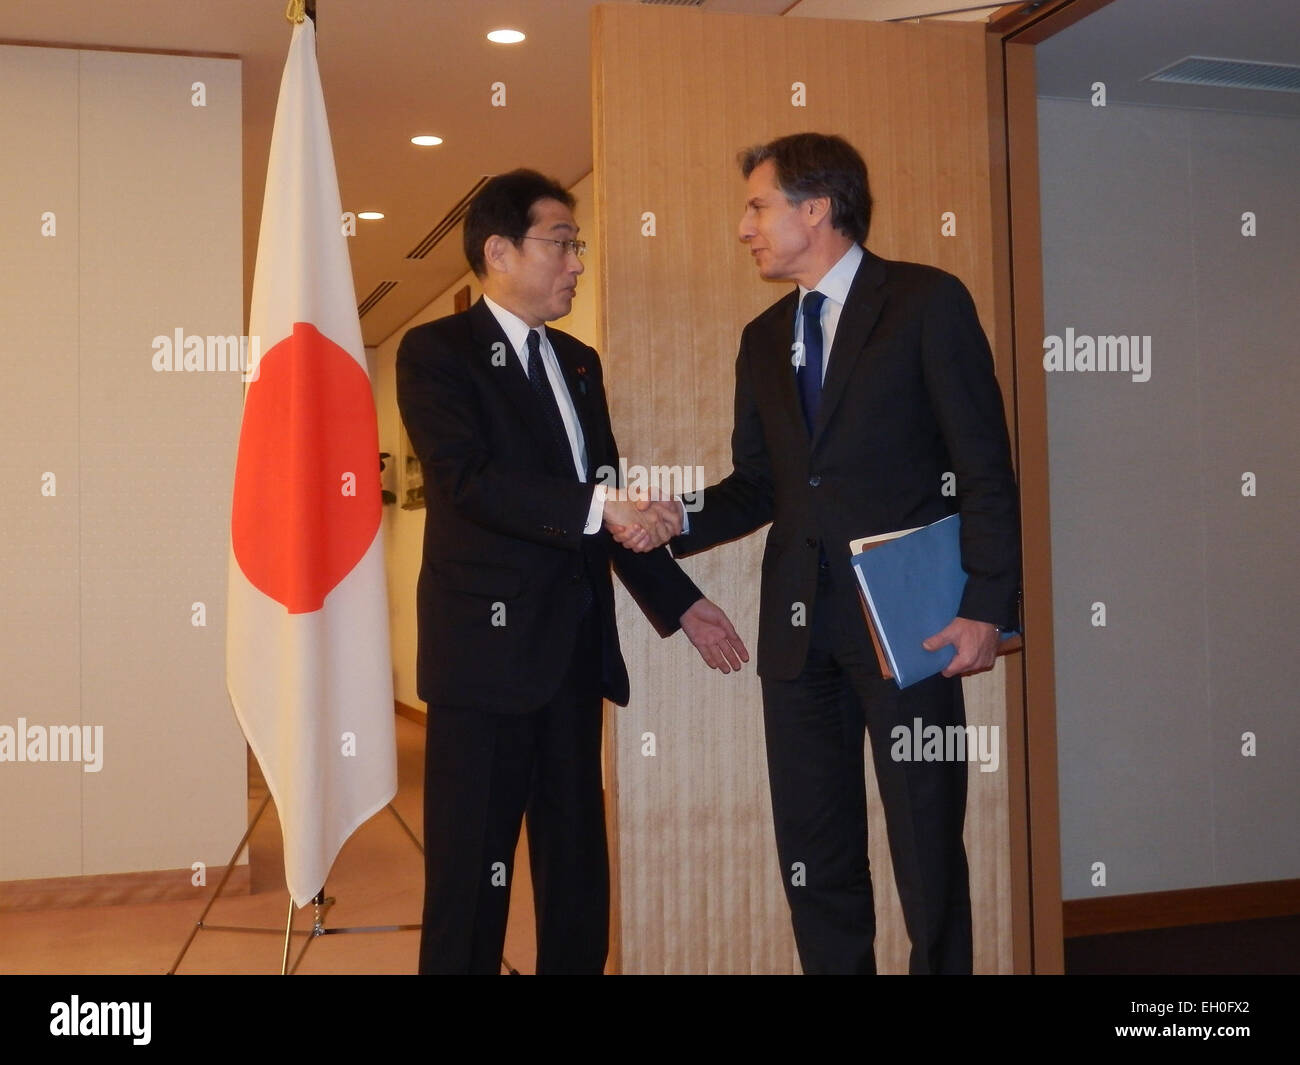 Il vice Segretario di Stato Antonio "Tony" Blinken, destro, viene accolto dal giapponese Ministro degli Esteri Fumio Kishida prima di un incontro presso il Ministero degli Affari Esteri in Tokyo, Giappone, il 13 febbraio 2014. Foto Stock